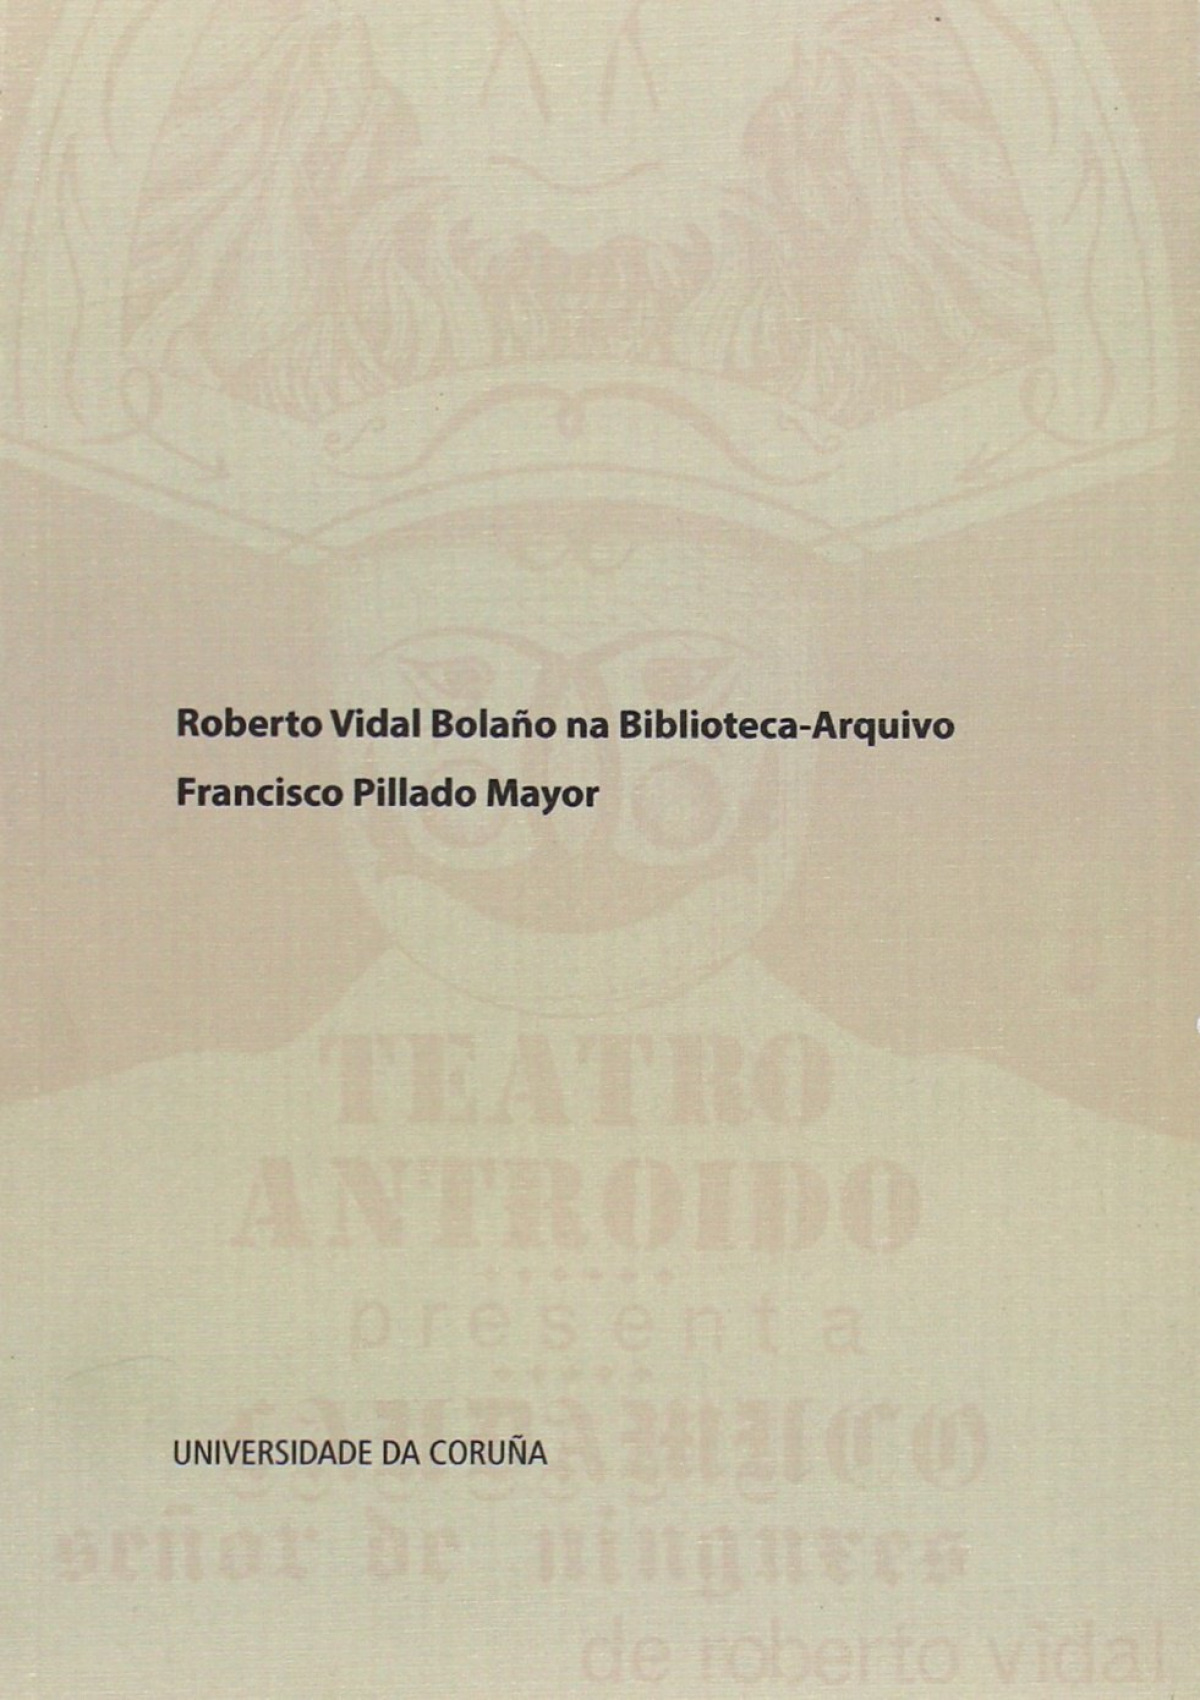 Roberto Vidal Bolaño na Biblioteca-Arquivo Francisco Pillado Mayor - Biscainho Fernandez, Carlos Caetano / e outros